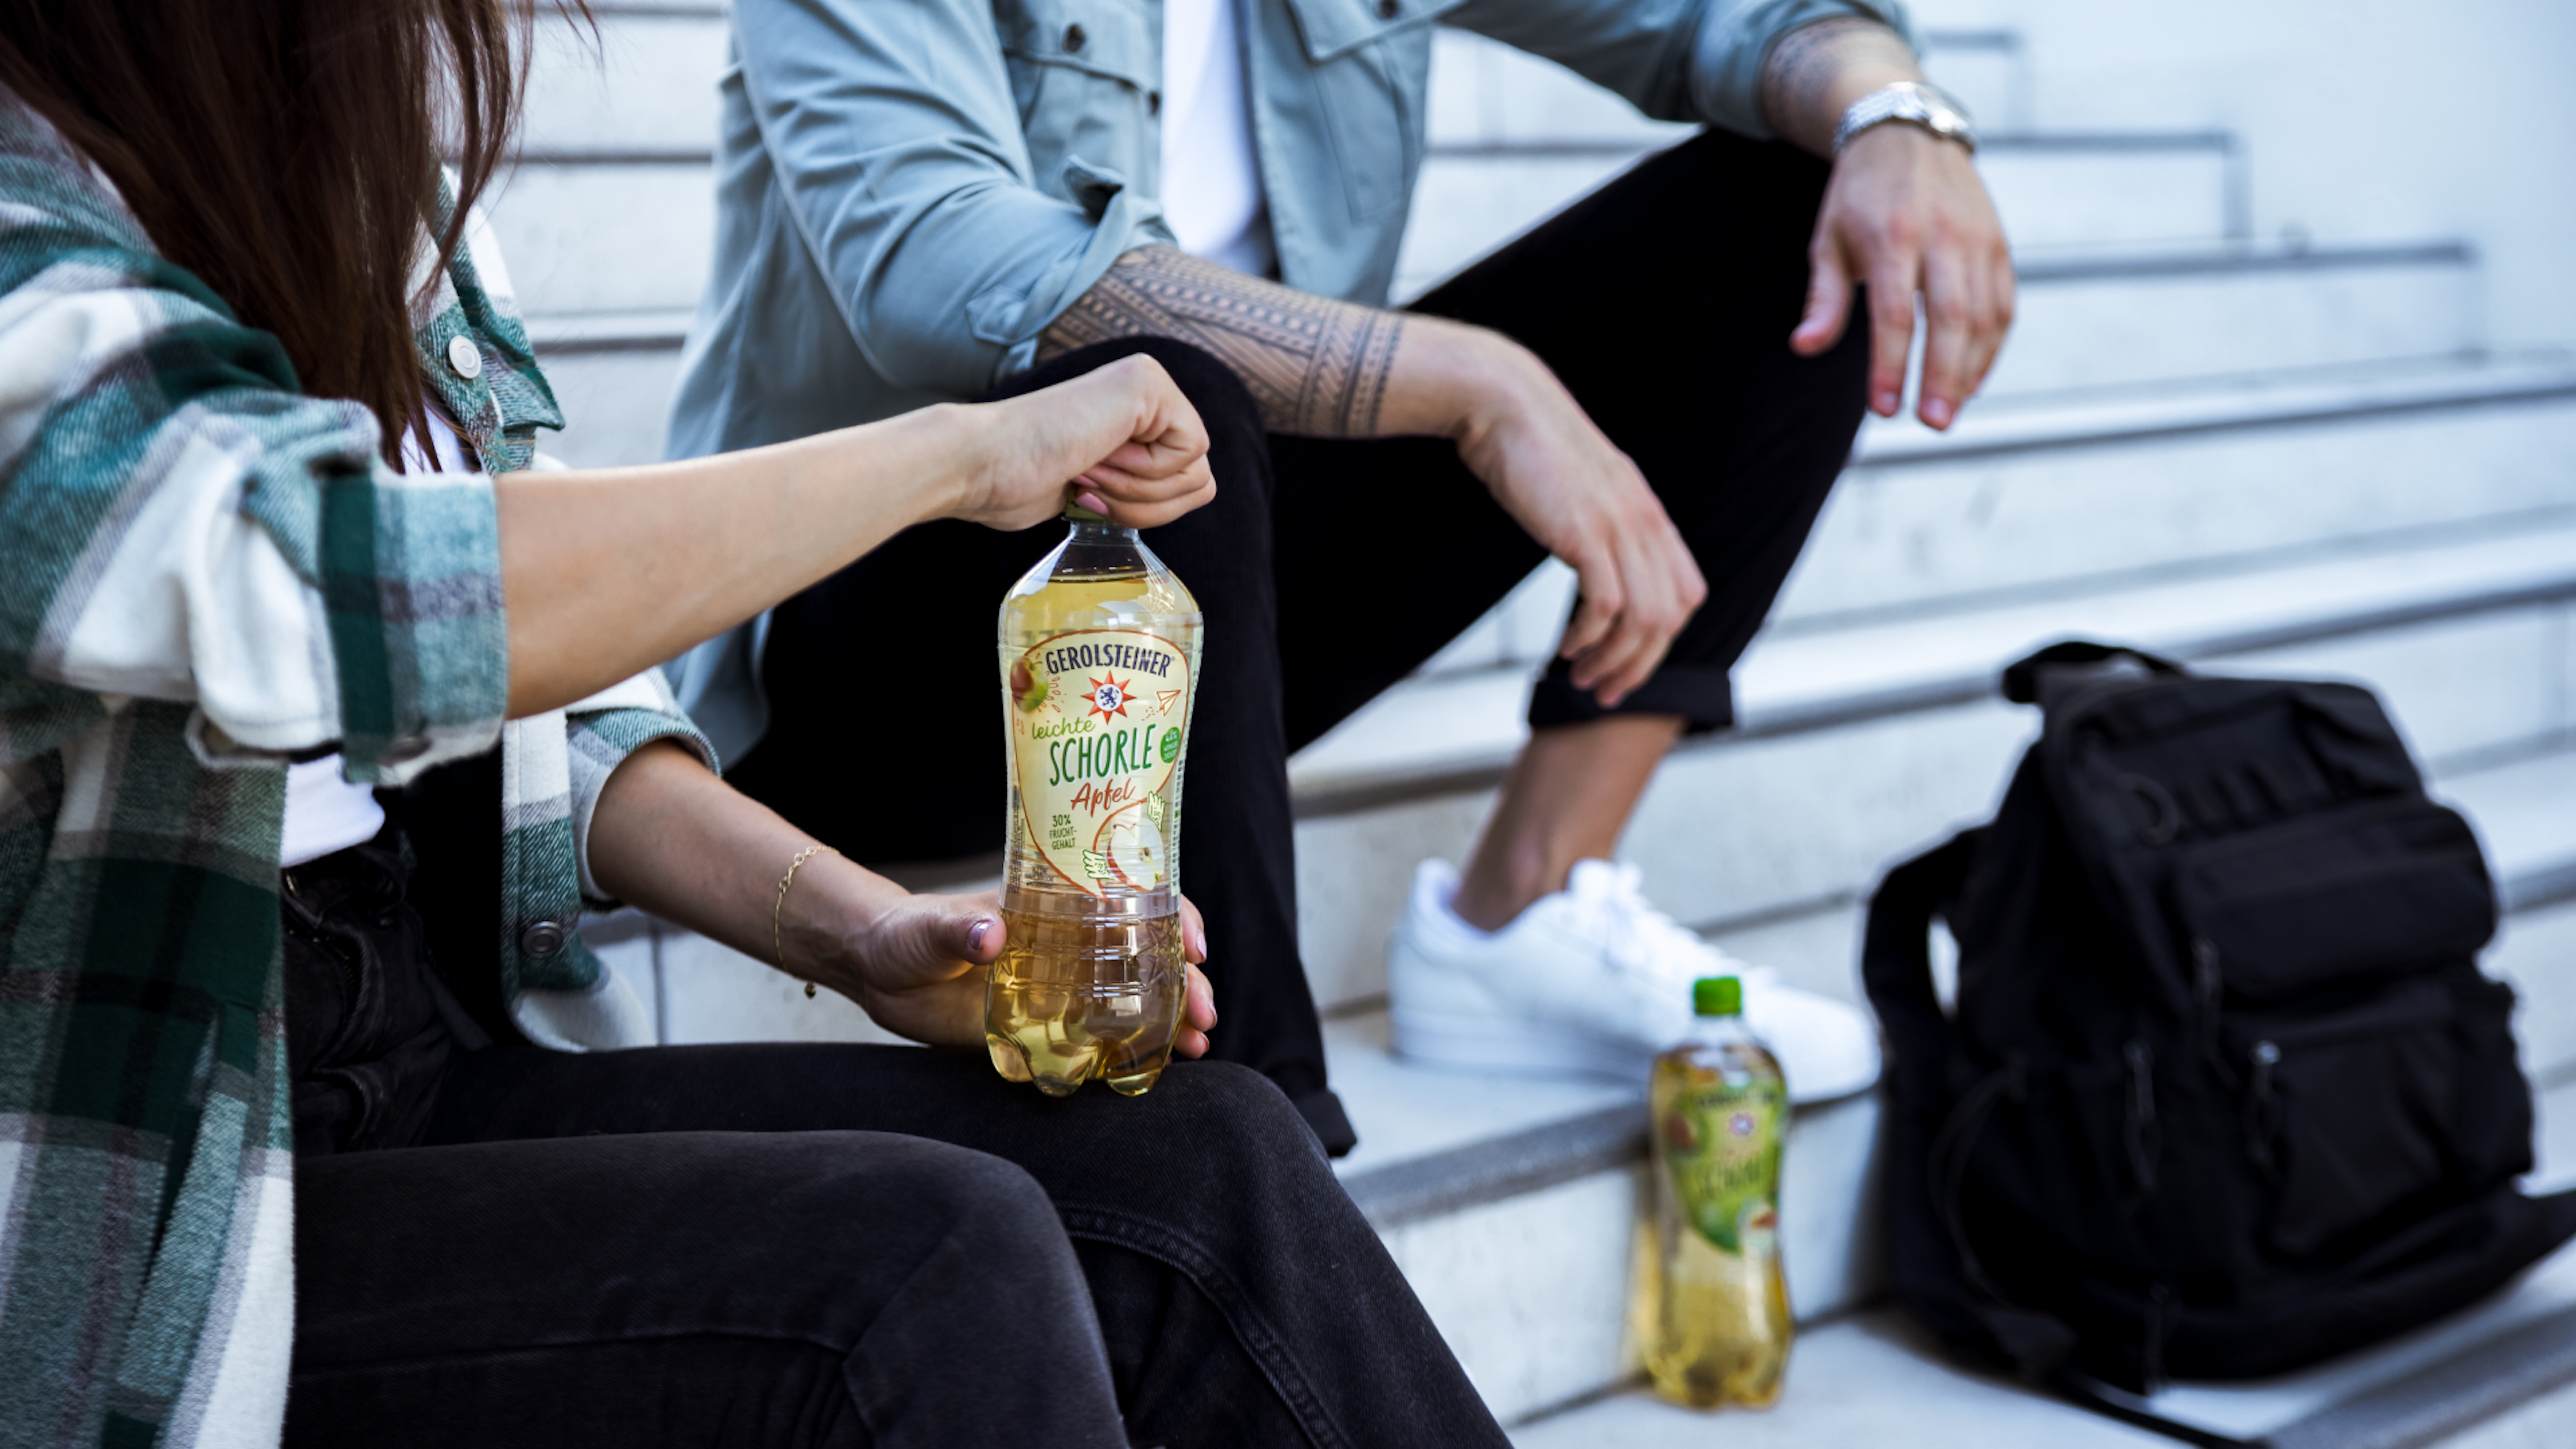 Zwei Personen sitzen auf Stufen und teilen sich eine Flasche Leichte Apfelschorle.